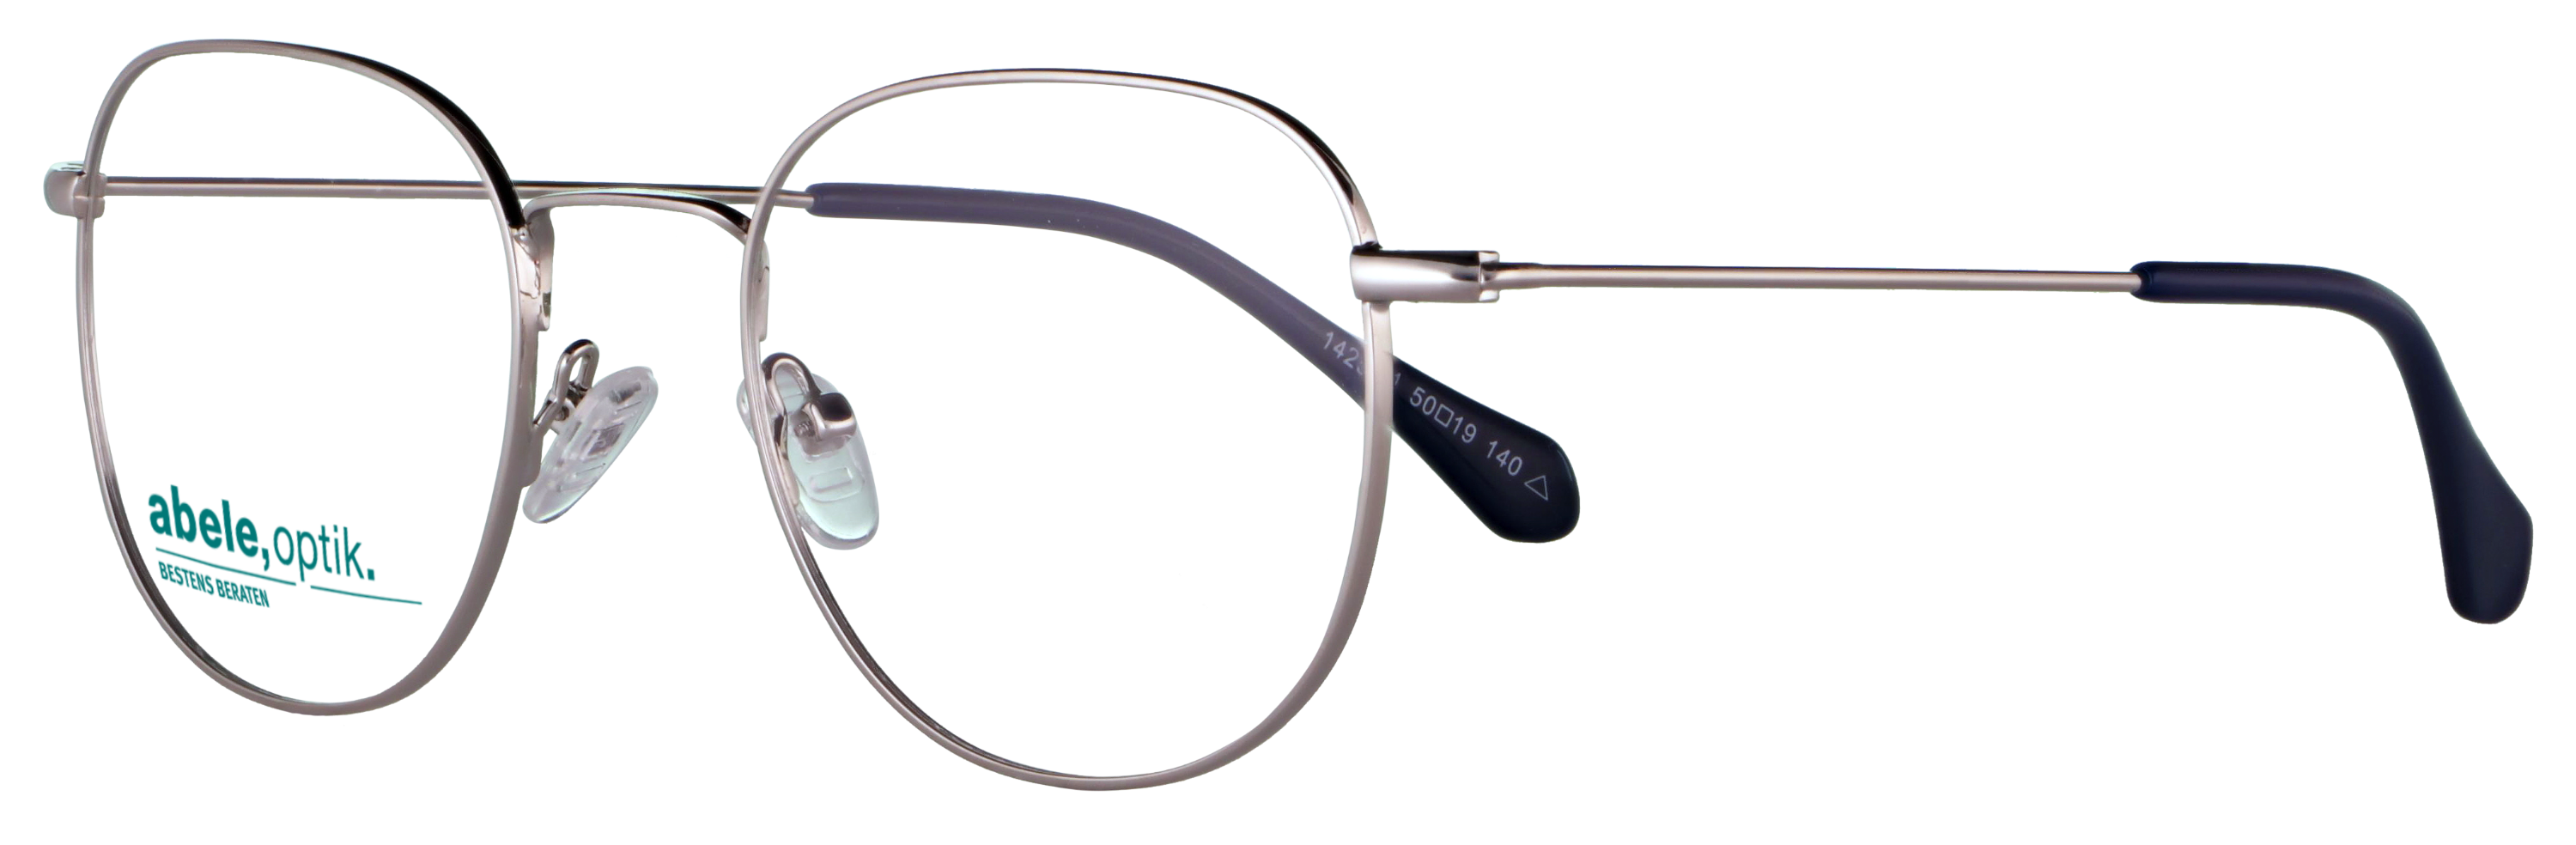 Das Bild zeigt die Korrektionsbrille 142531 von der Marke Abele Optik in silber.